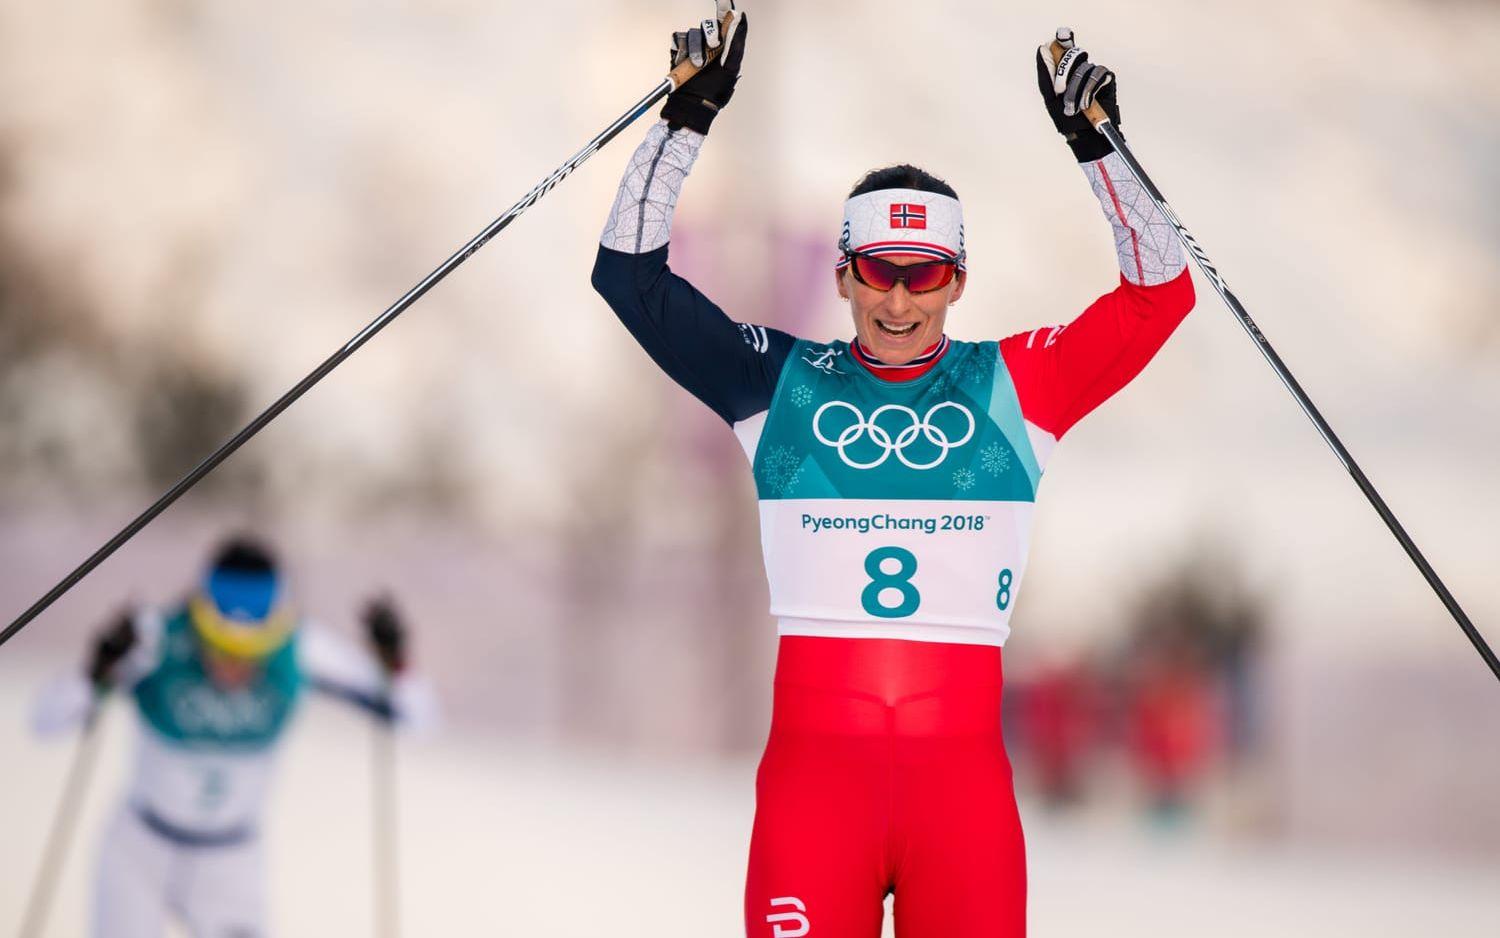 Silvermedaljen gör henne till den kvinna som tagit flest olympiska medaljer. Norskan kan stoltsera med hela elva medaljer. 